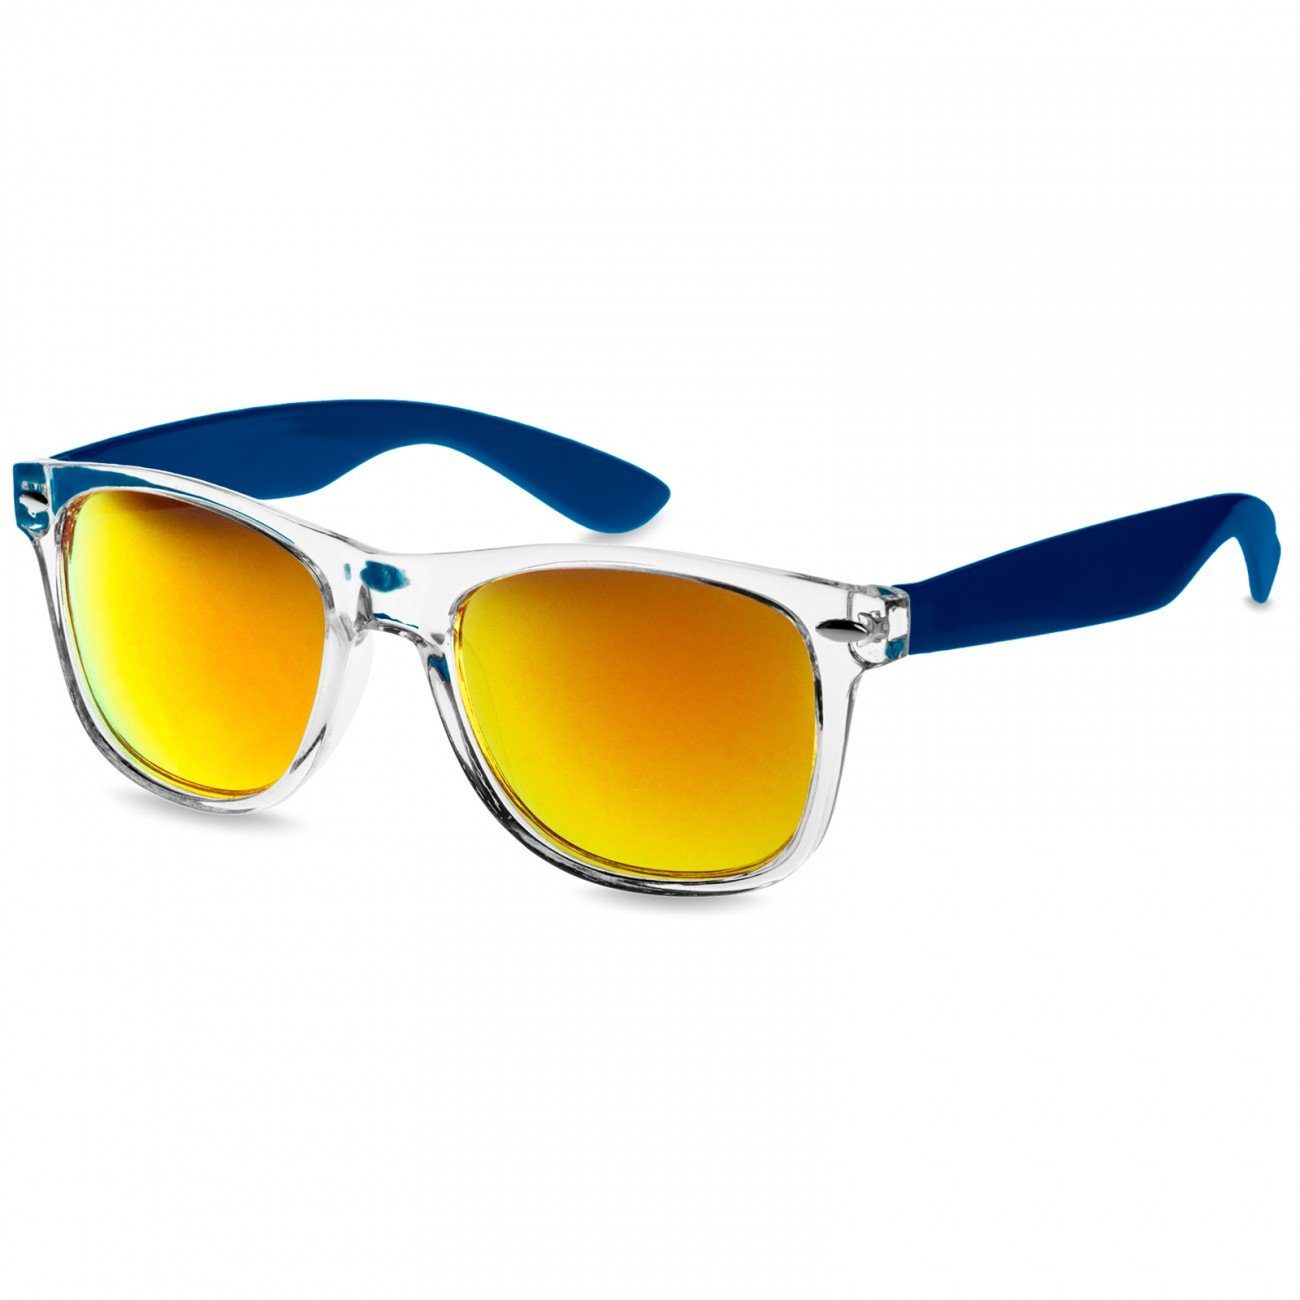 Caspar Sonnenbrille SG017 Damen RETRO Designbrille blau / gold verspiegelt